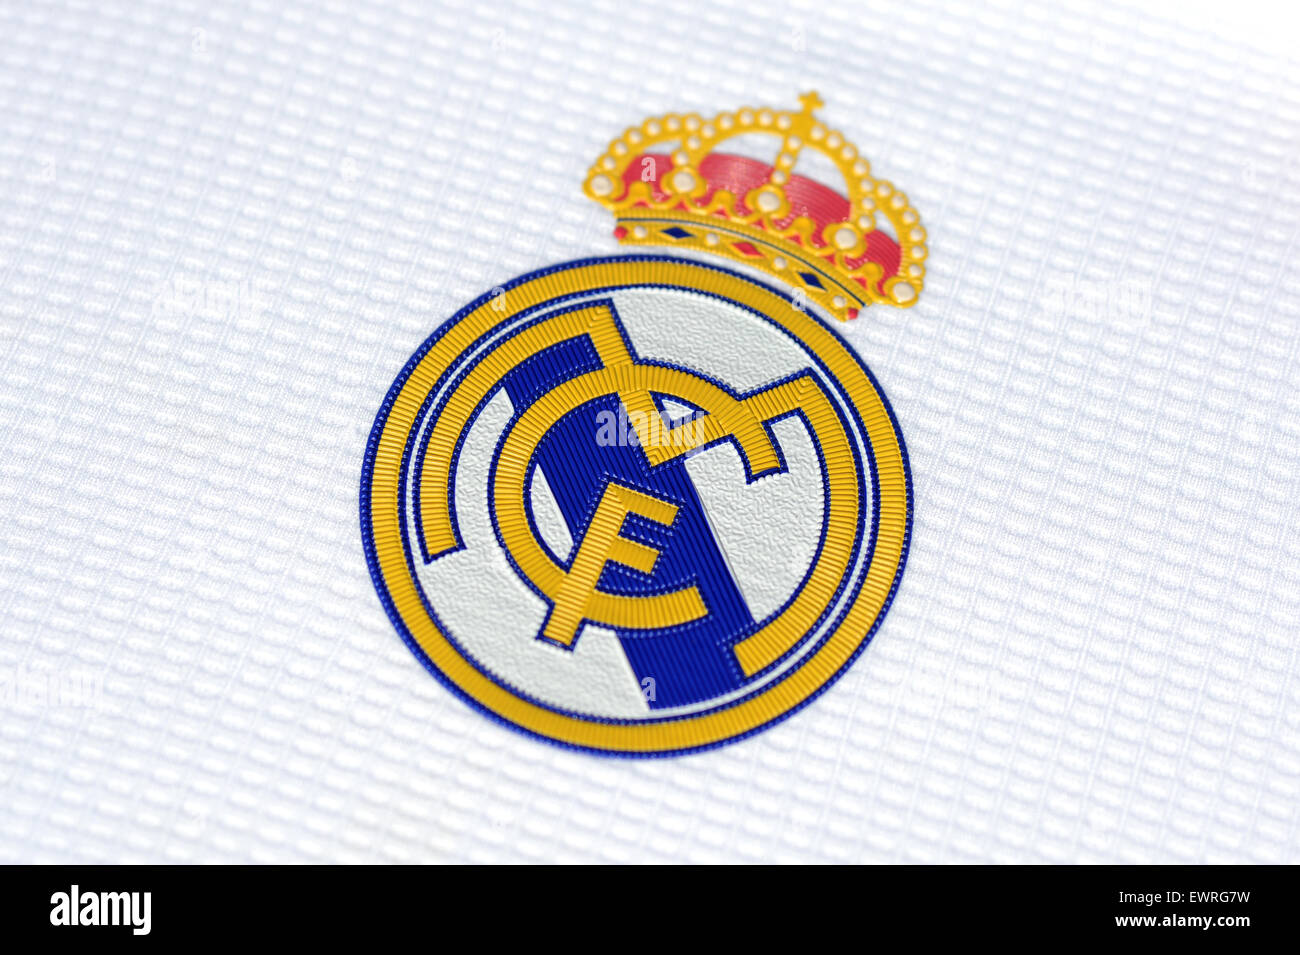 Bandera del Real Madrid Club de Fútbol mod. 1 